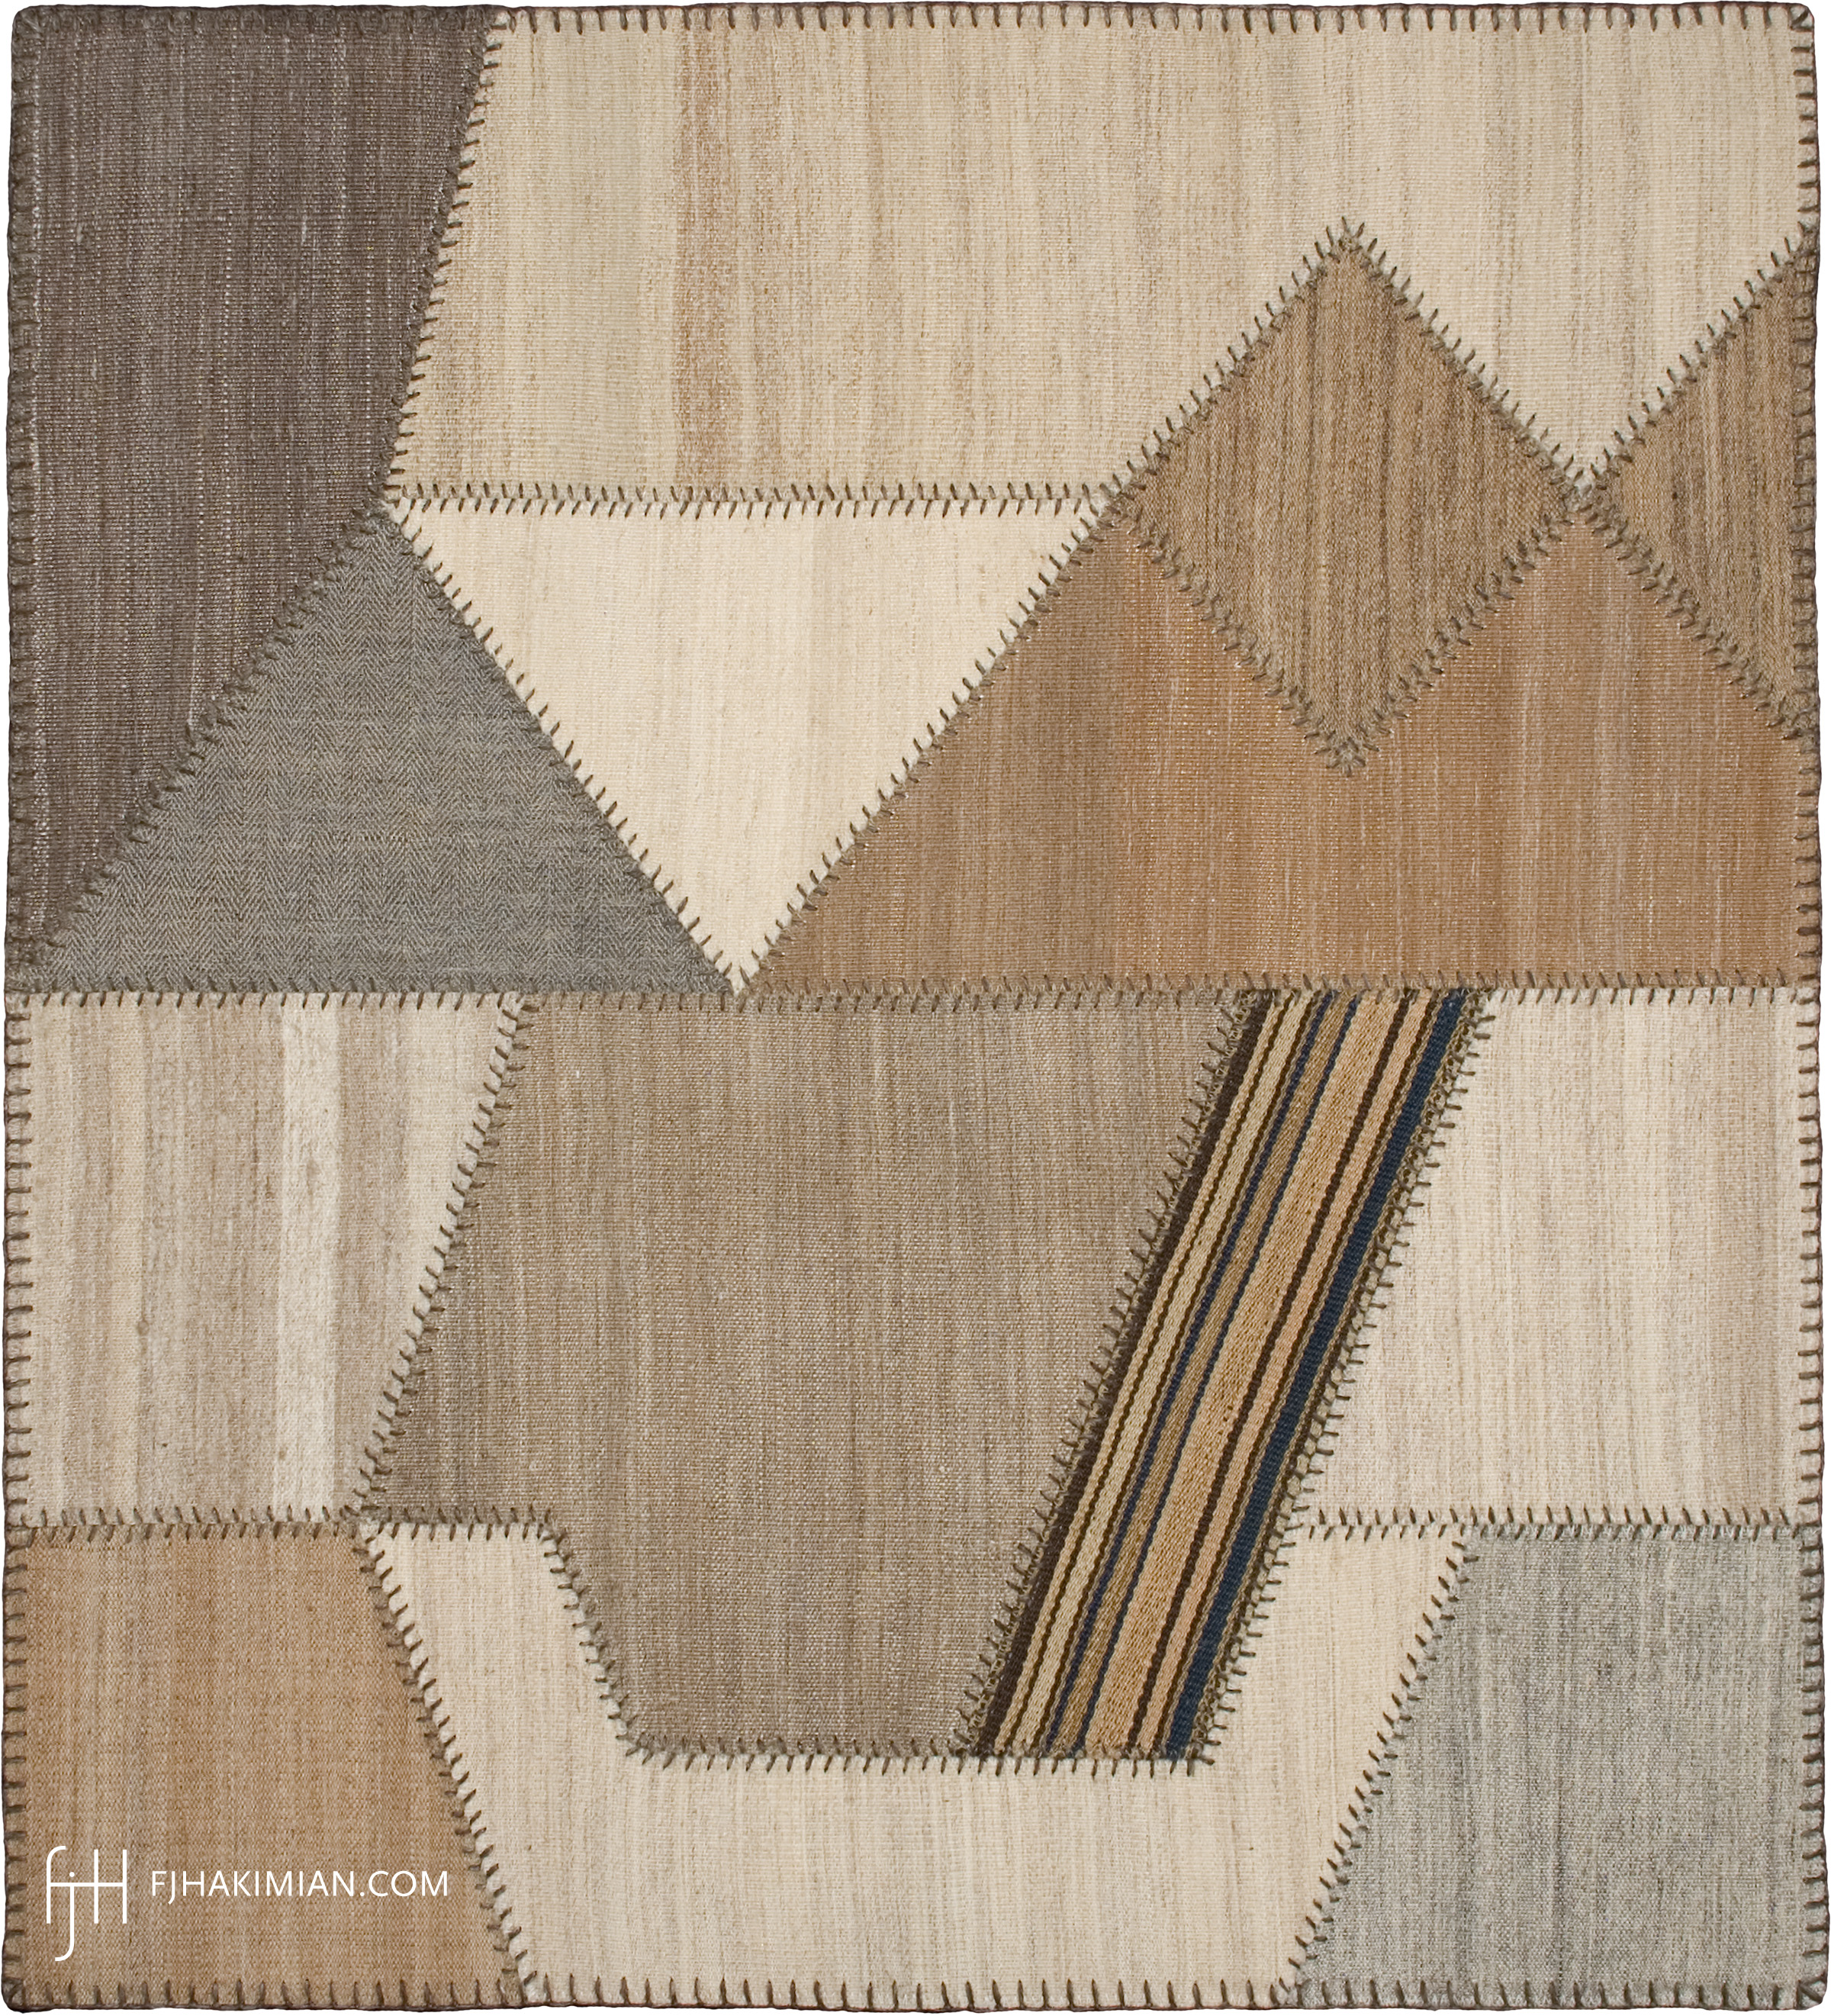 FJ Hakimian | 37008 | Custom Carpet